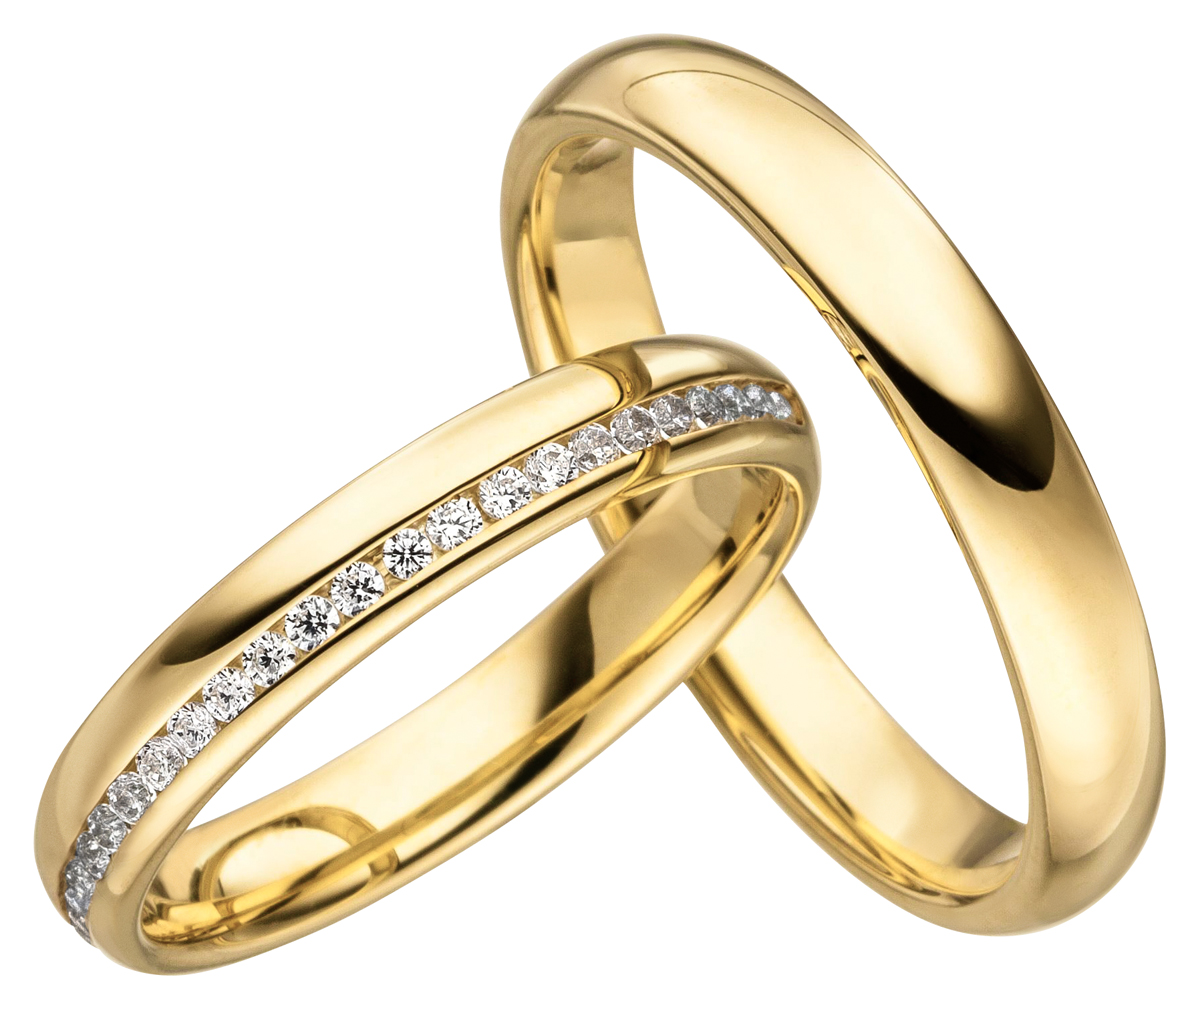 Trauringe Gold 375 günstig online kaufen | JC-Trauringe